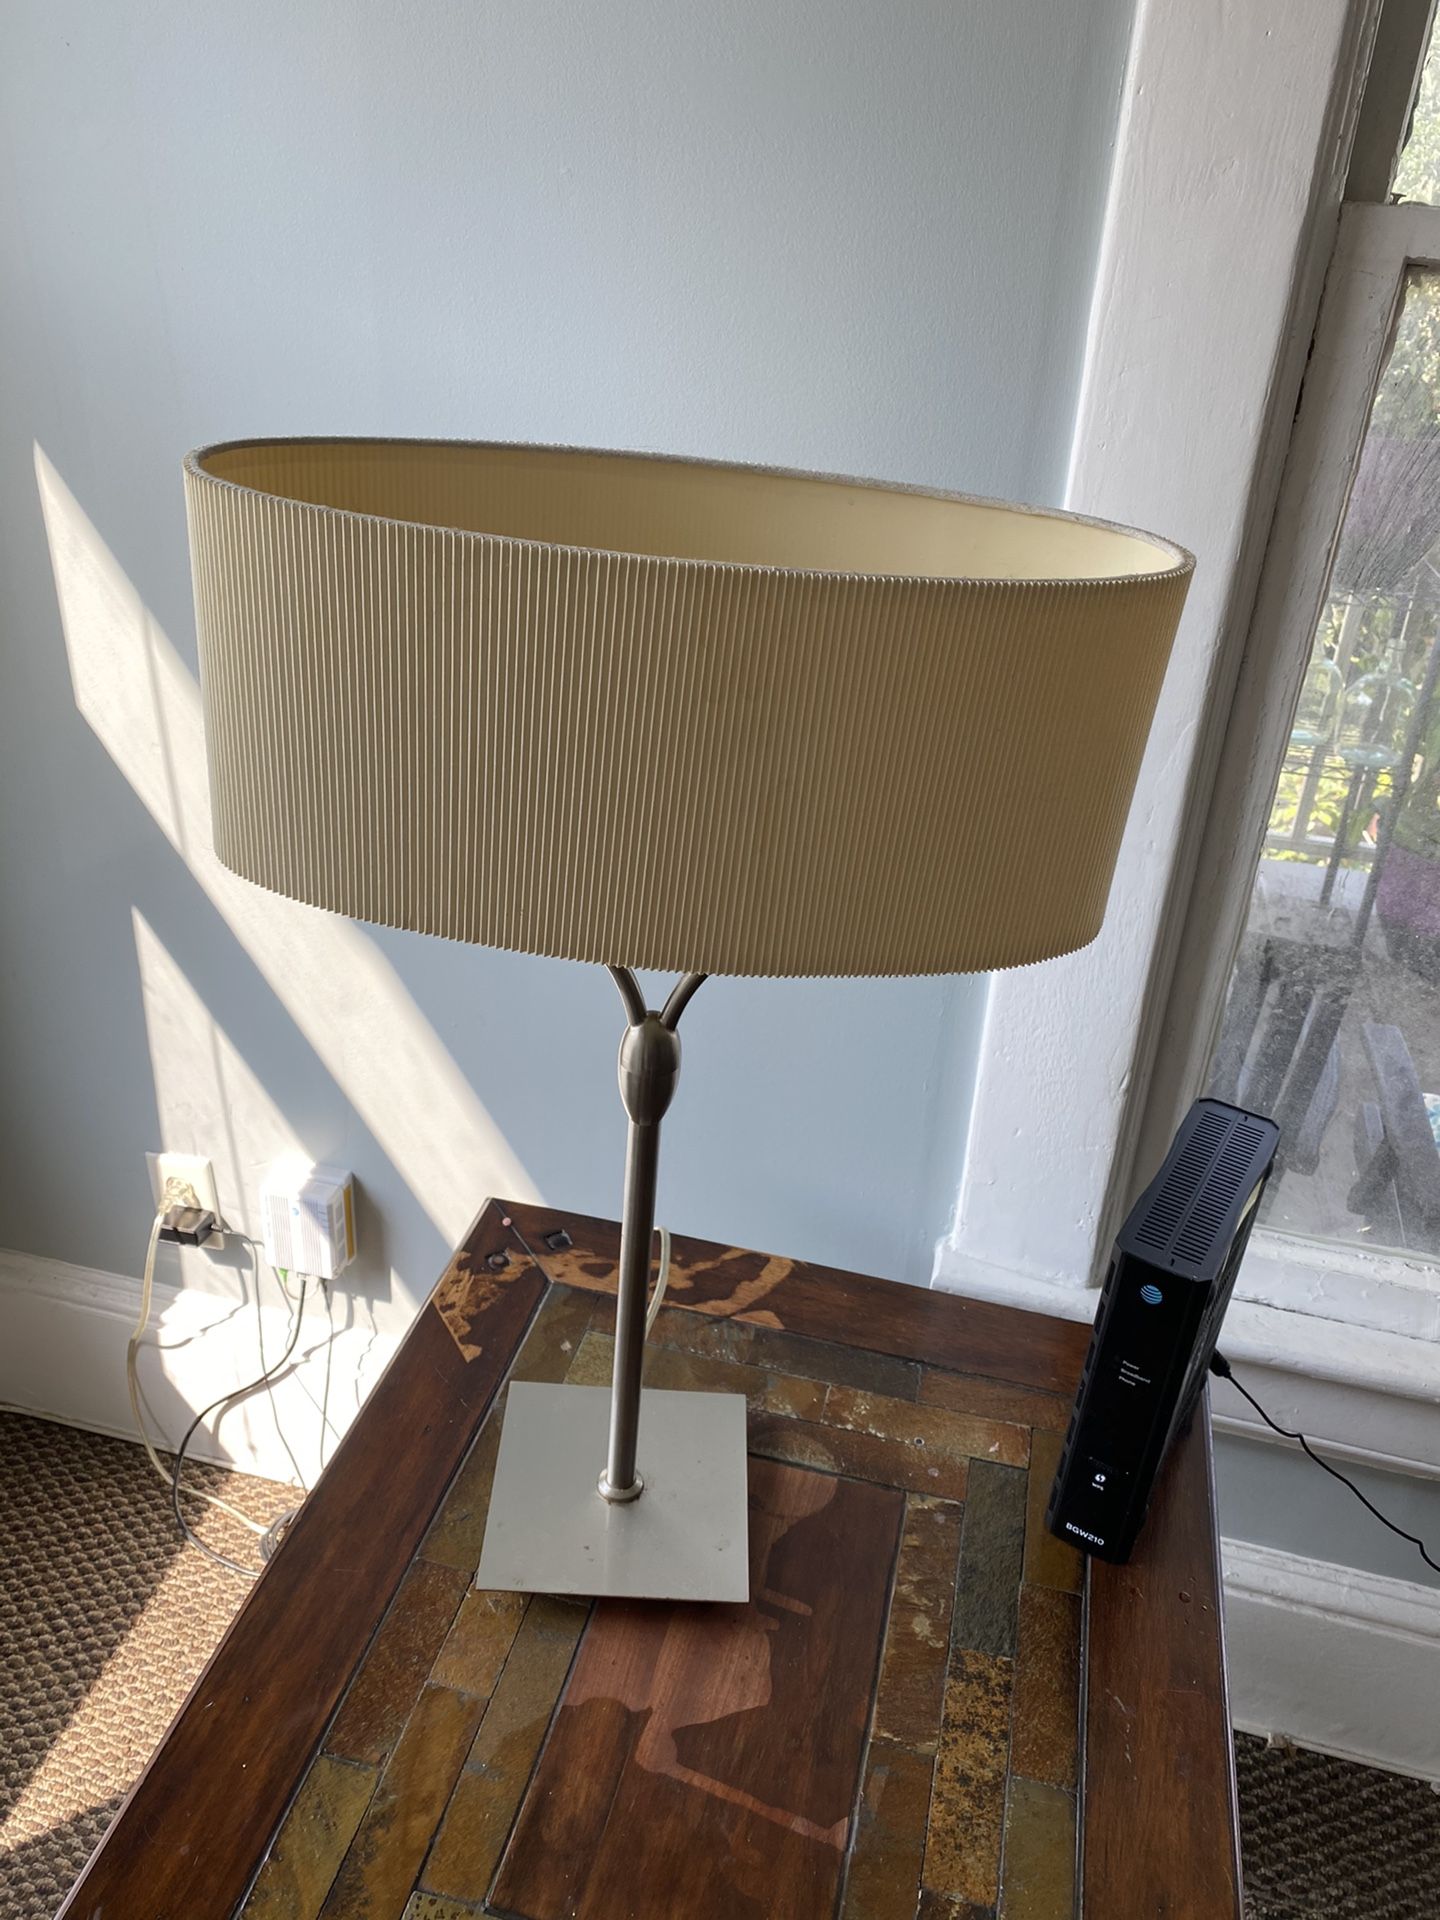 2 Bulb Lamp